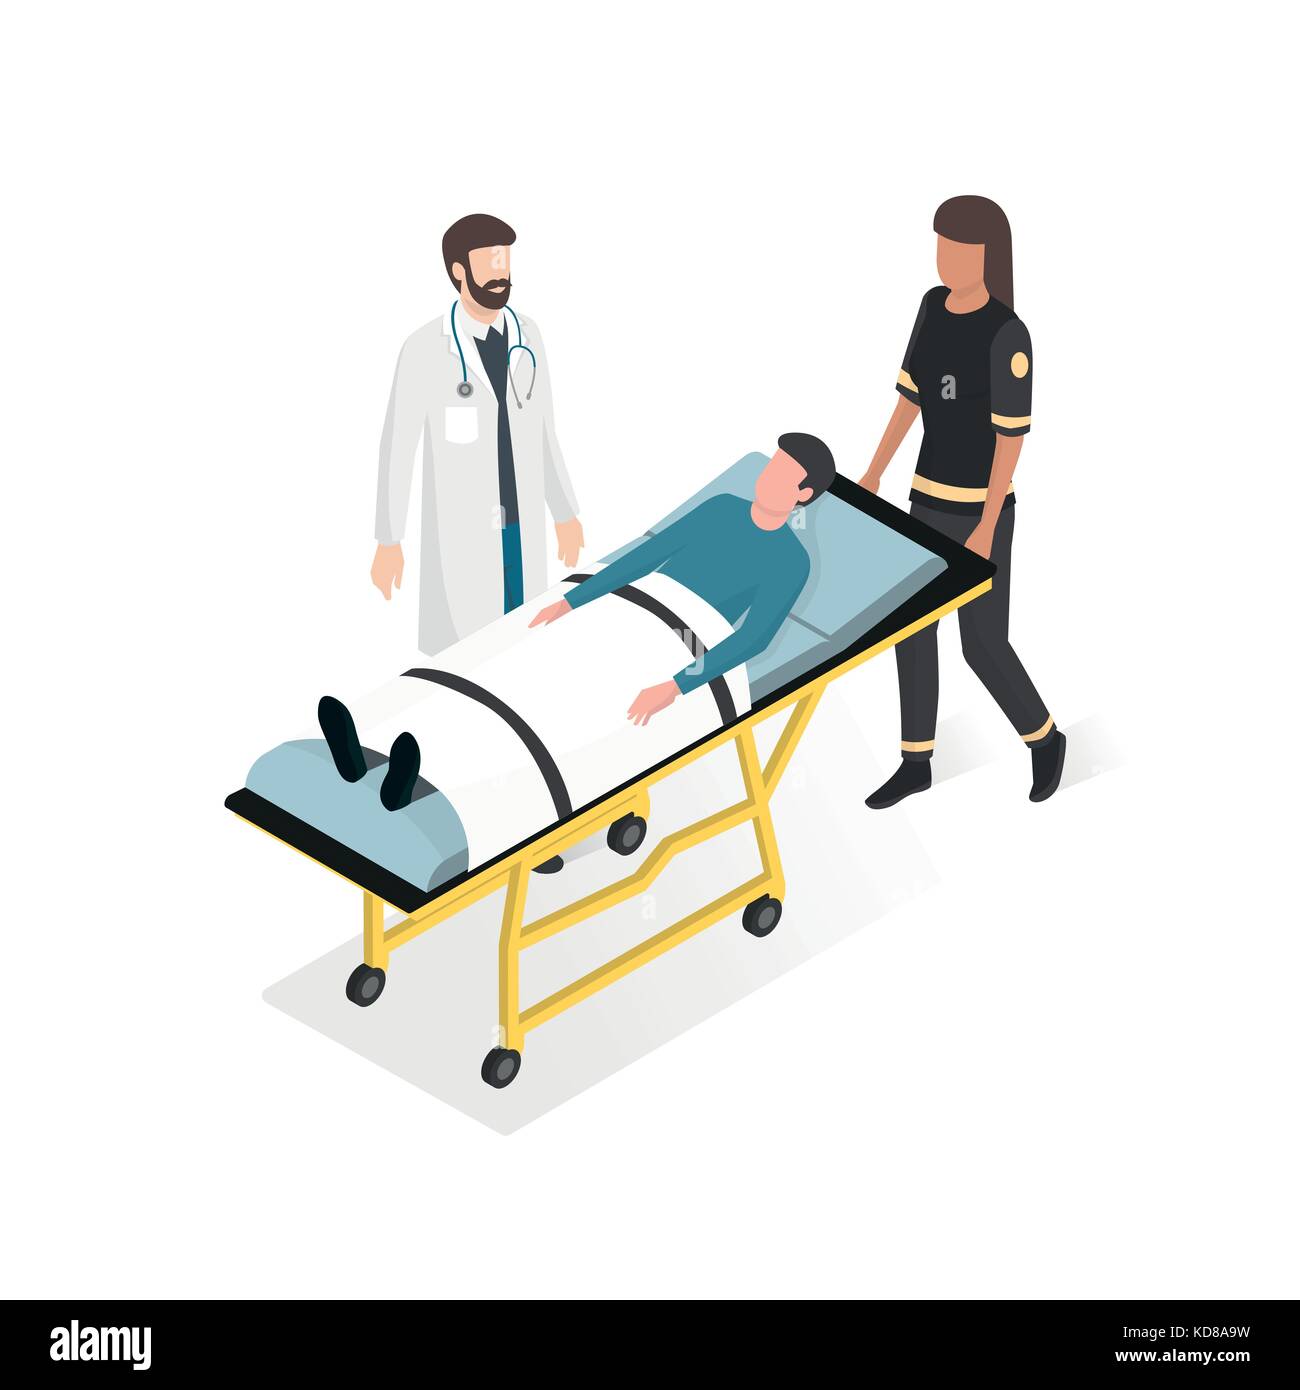 Primo soccorso in ospedale: medico e paramedico di prendersi cura del paziente durante una situazione di emergenza Illustrazione Vettoriale